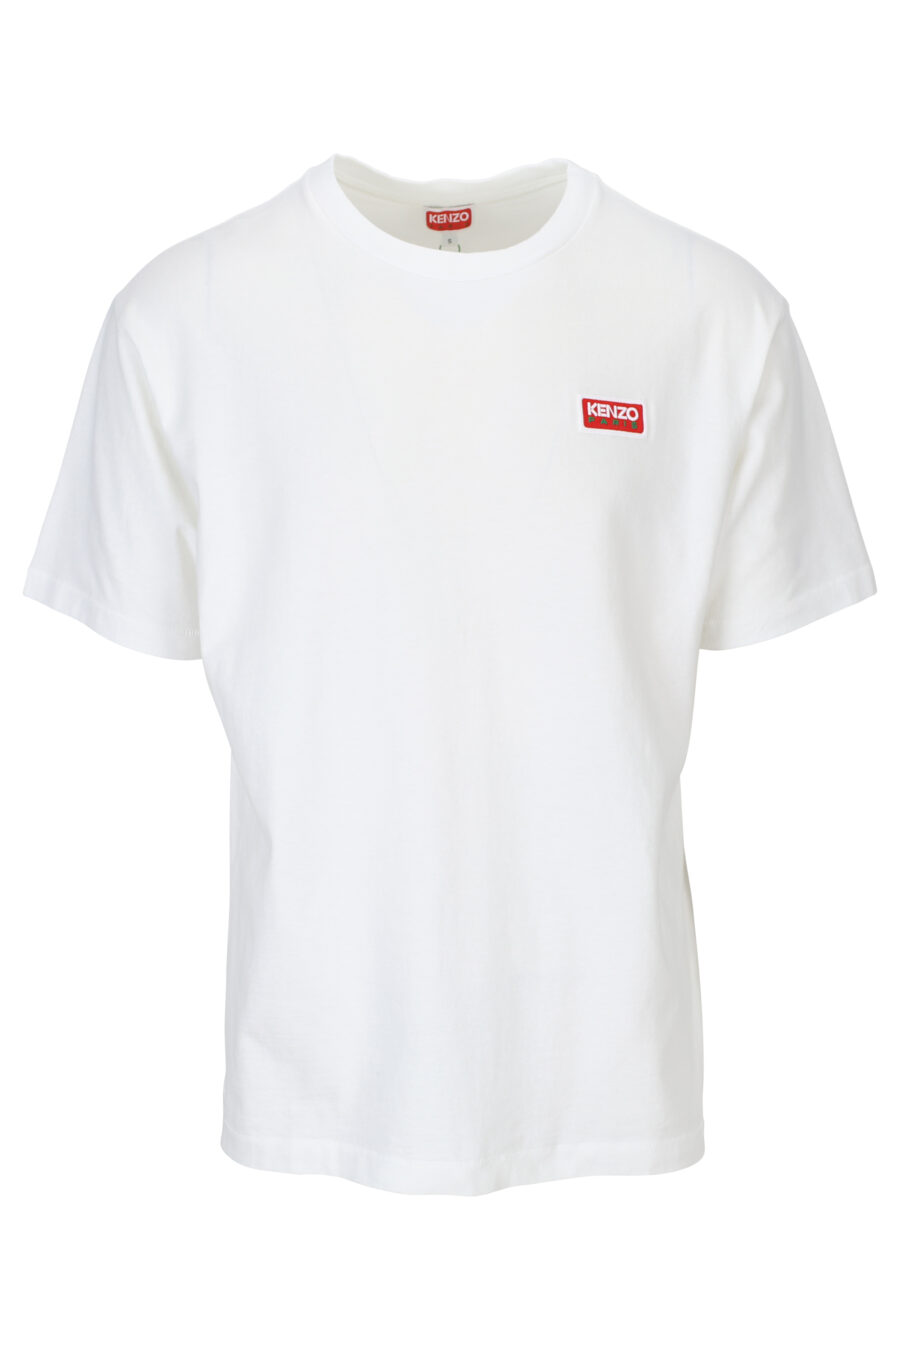 Camiseta blanca con maxilogo"kenzo paris" en espalda - 3612230543140